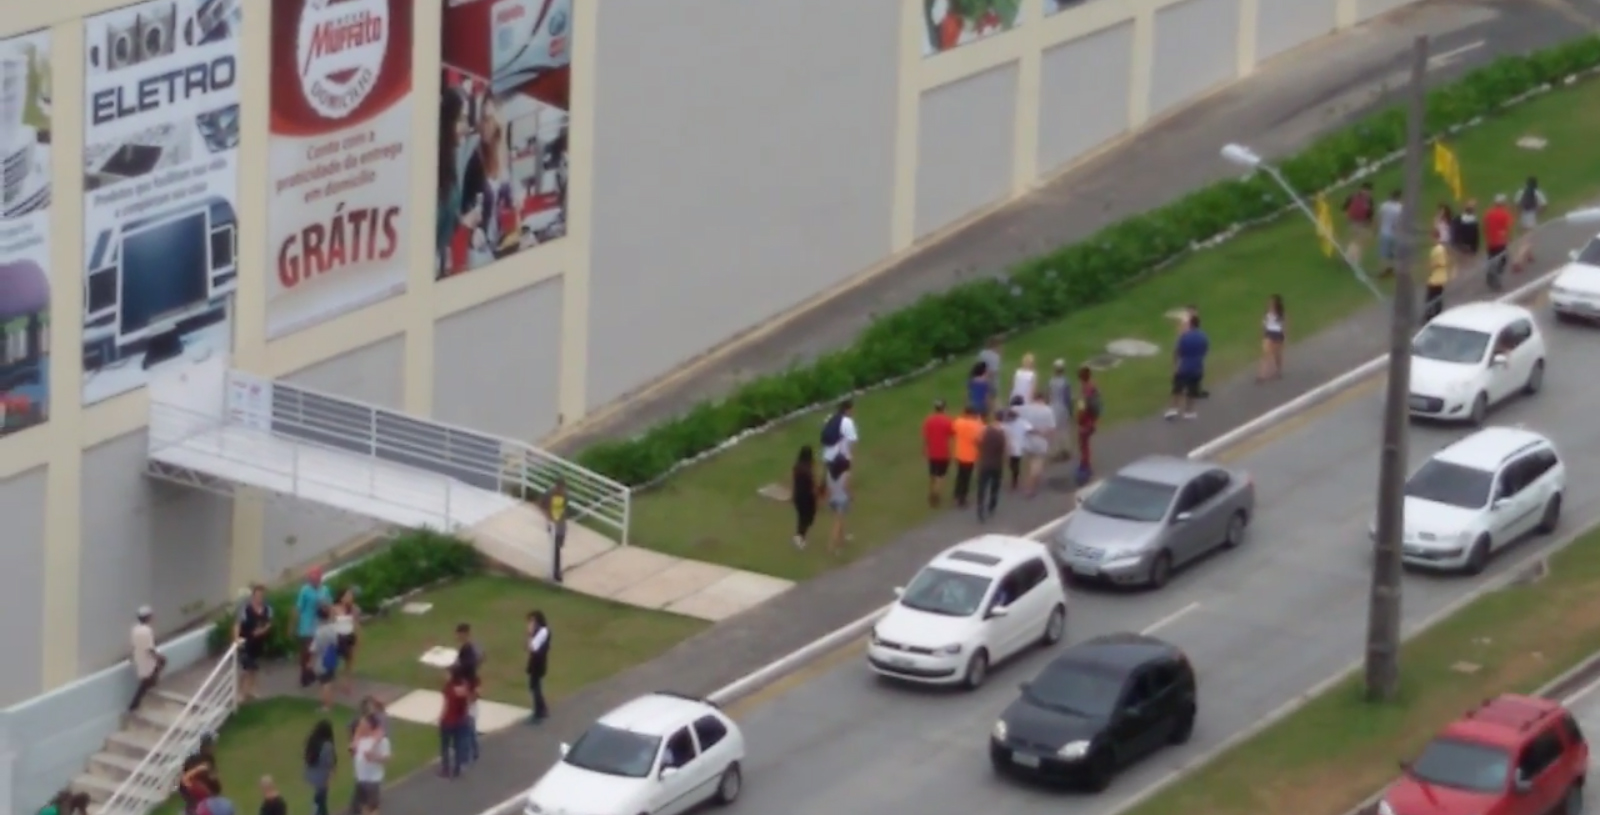 Vídeo flagra arrastão em Curitiba